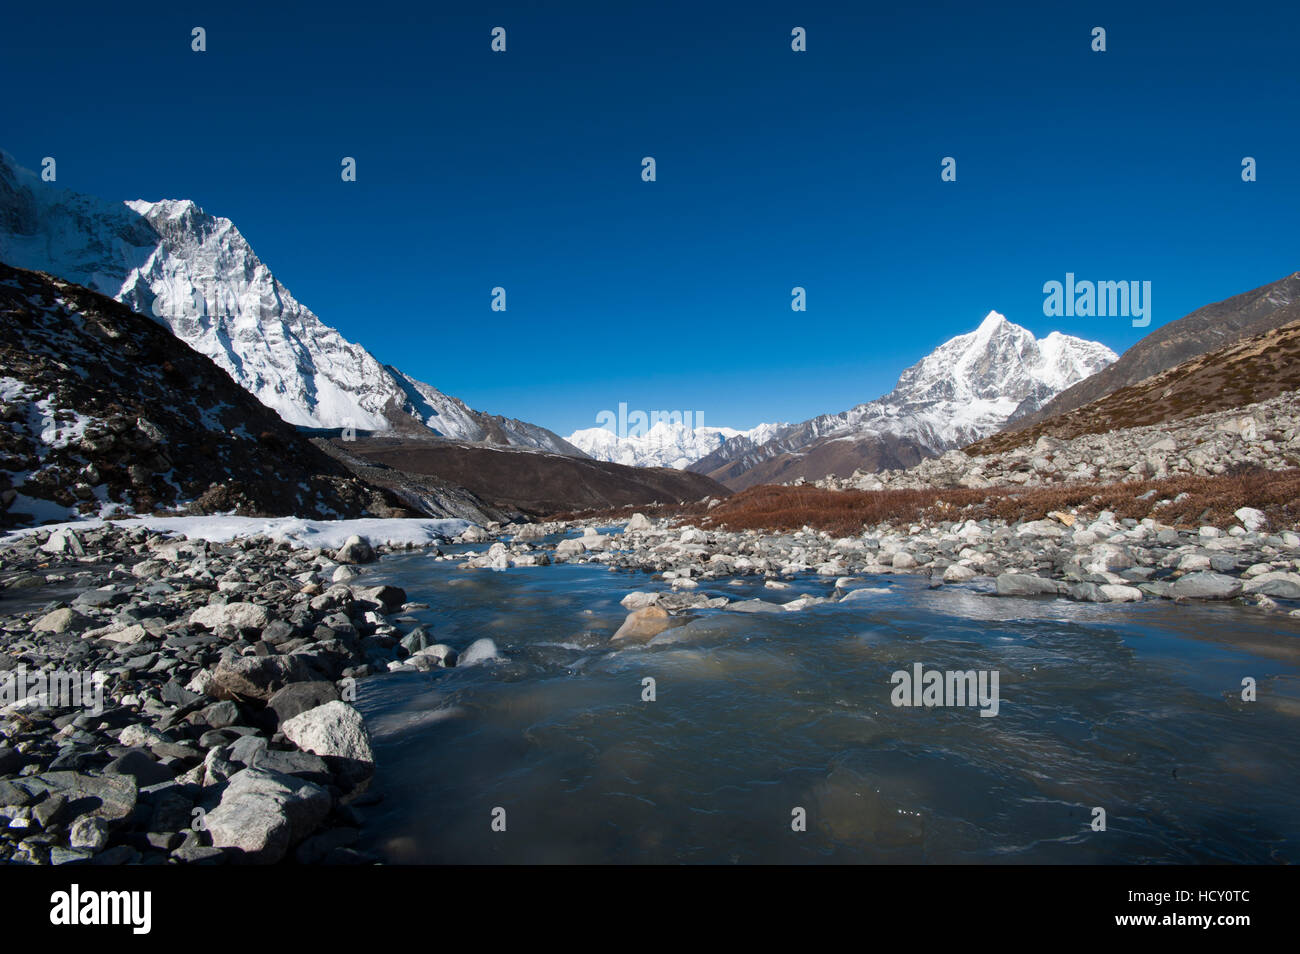 Eisige Schmelzwasser fließt unten das Chekhung-Tal mit Blick auf Ama Dablam auf der linken Seite und Taboche auf der rechten Seite, Region Khumbu, Nepal Stockfoto